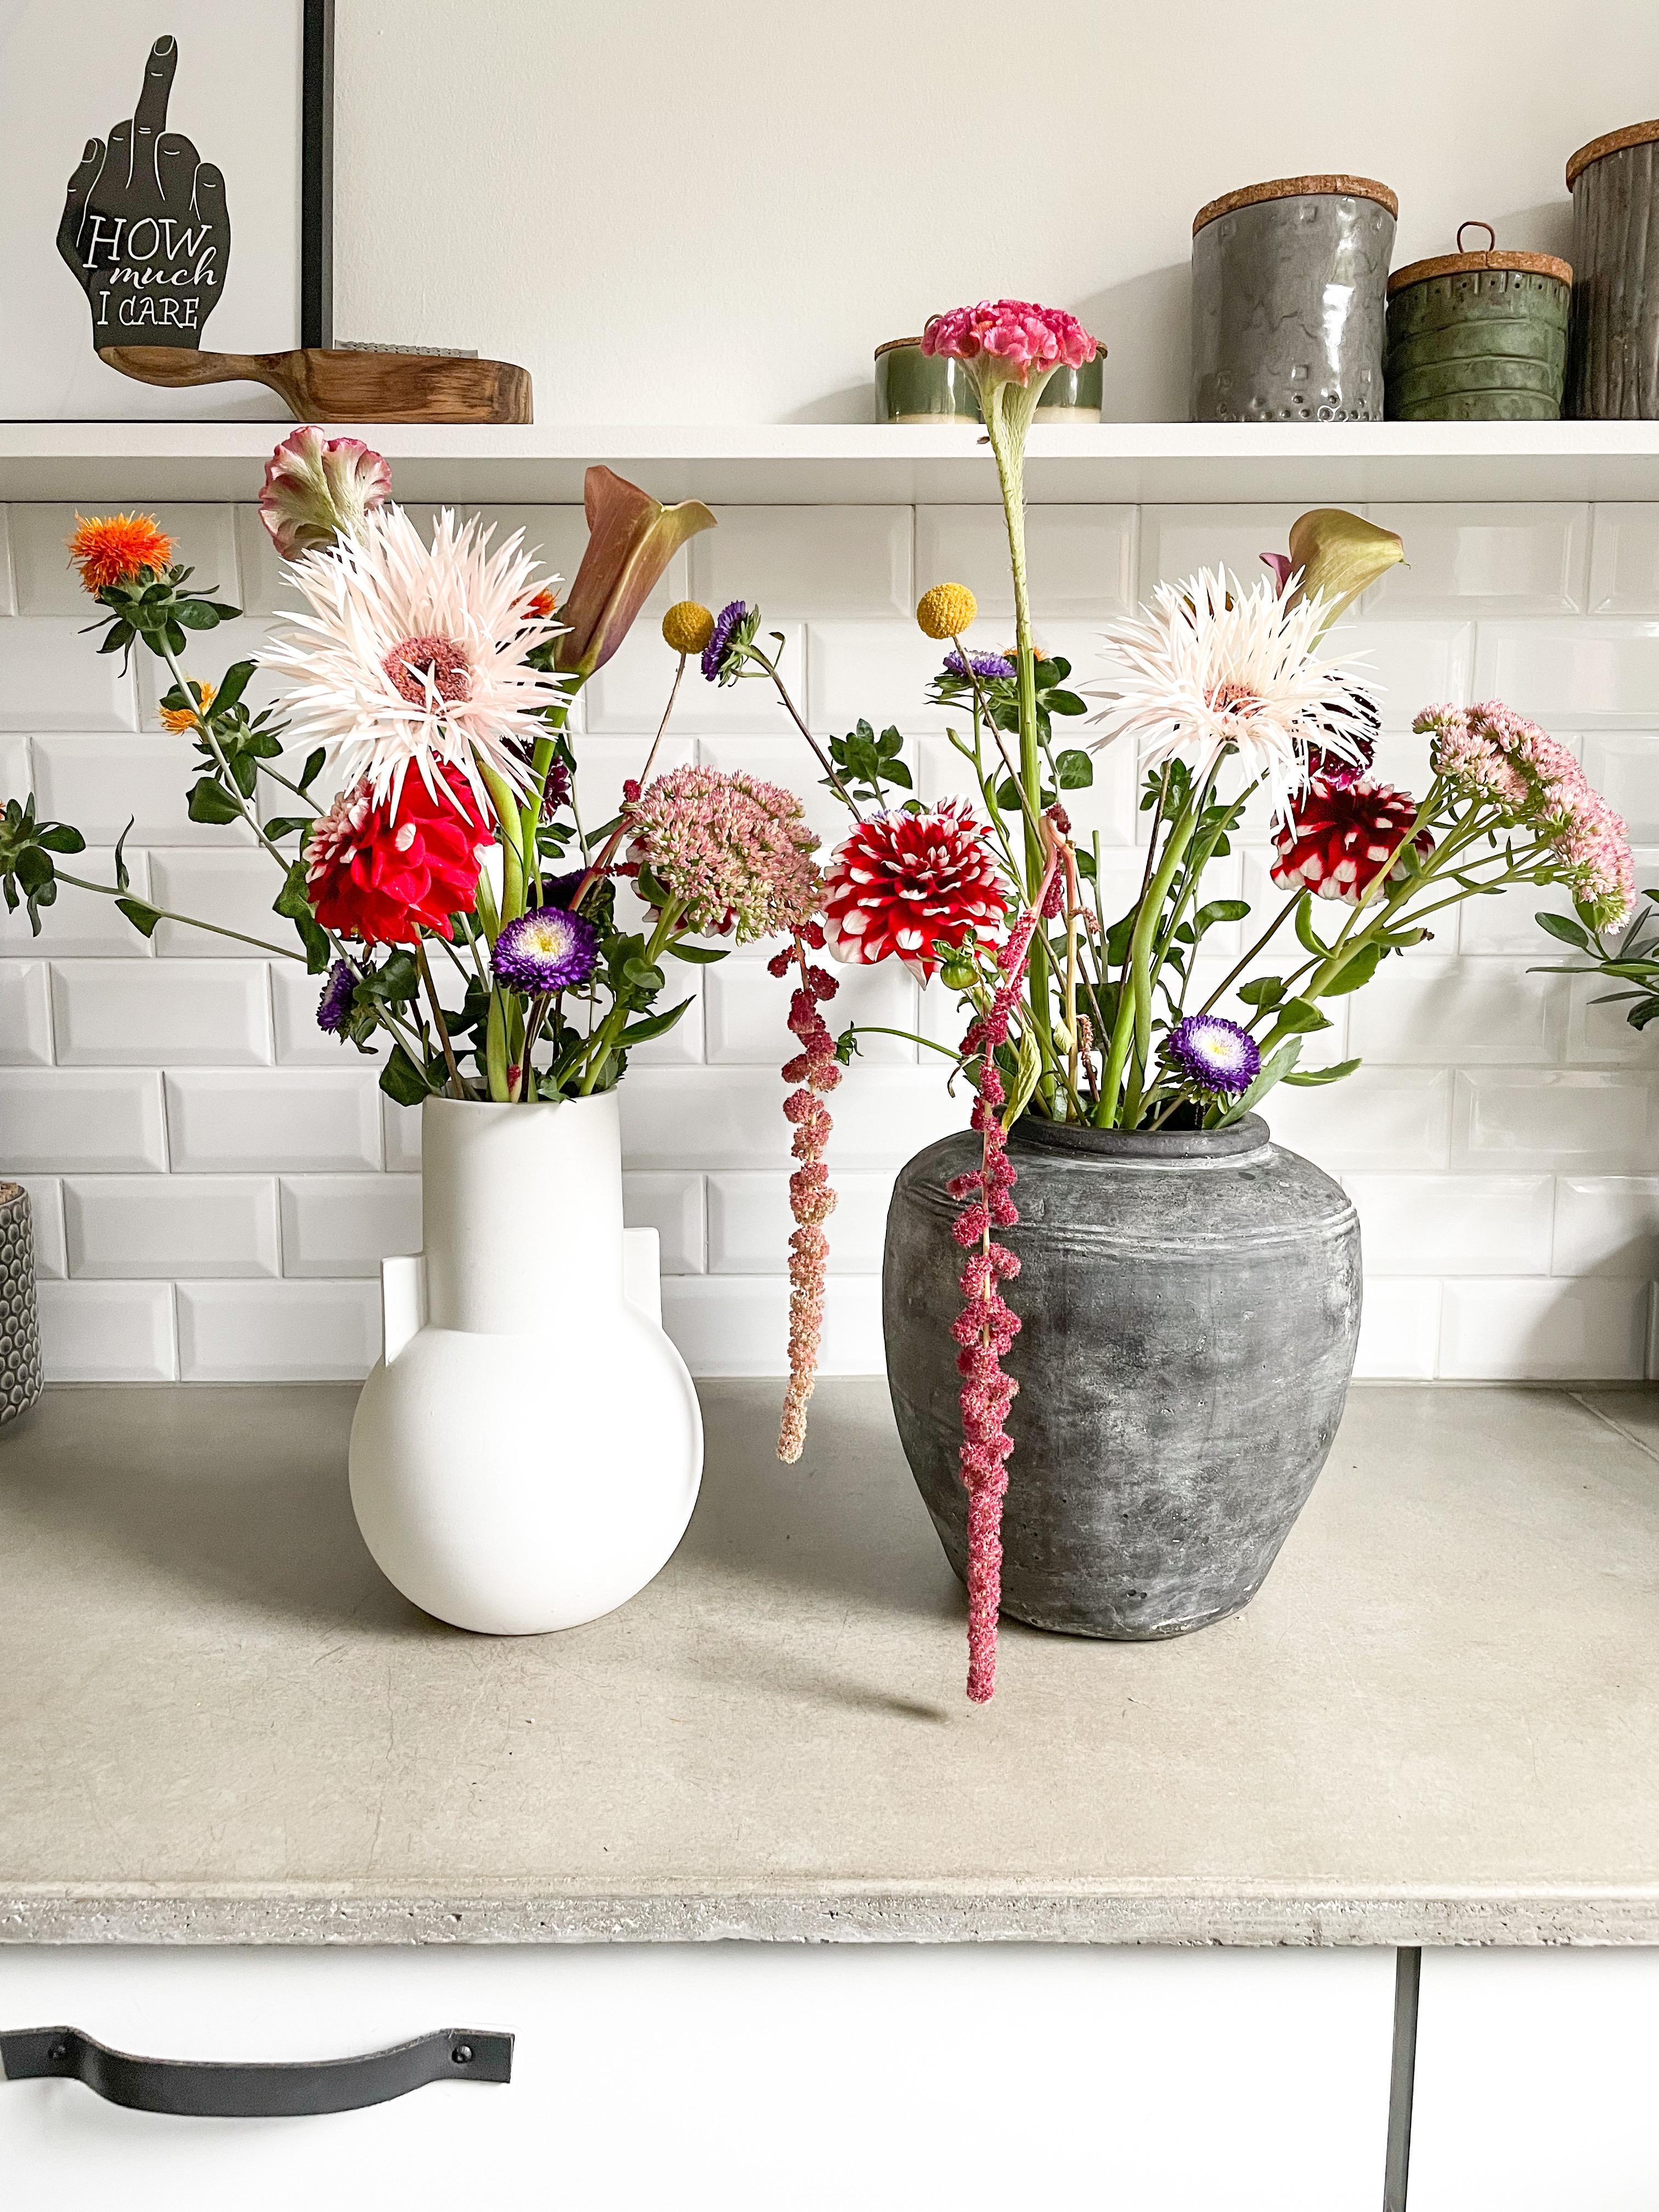 Frische Blumen? Dann ist fast Wochenende! 

#Blumen #Blumenvase #Blumenstrauss #Küche #Metrofliesen